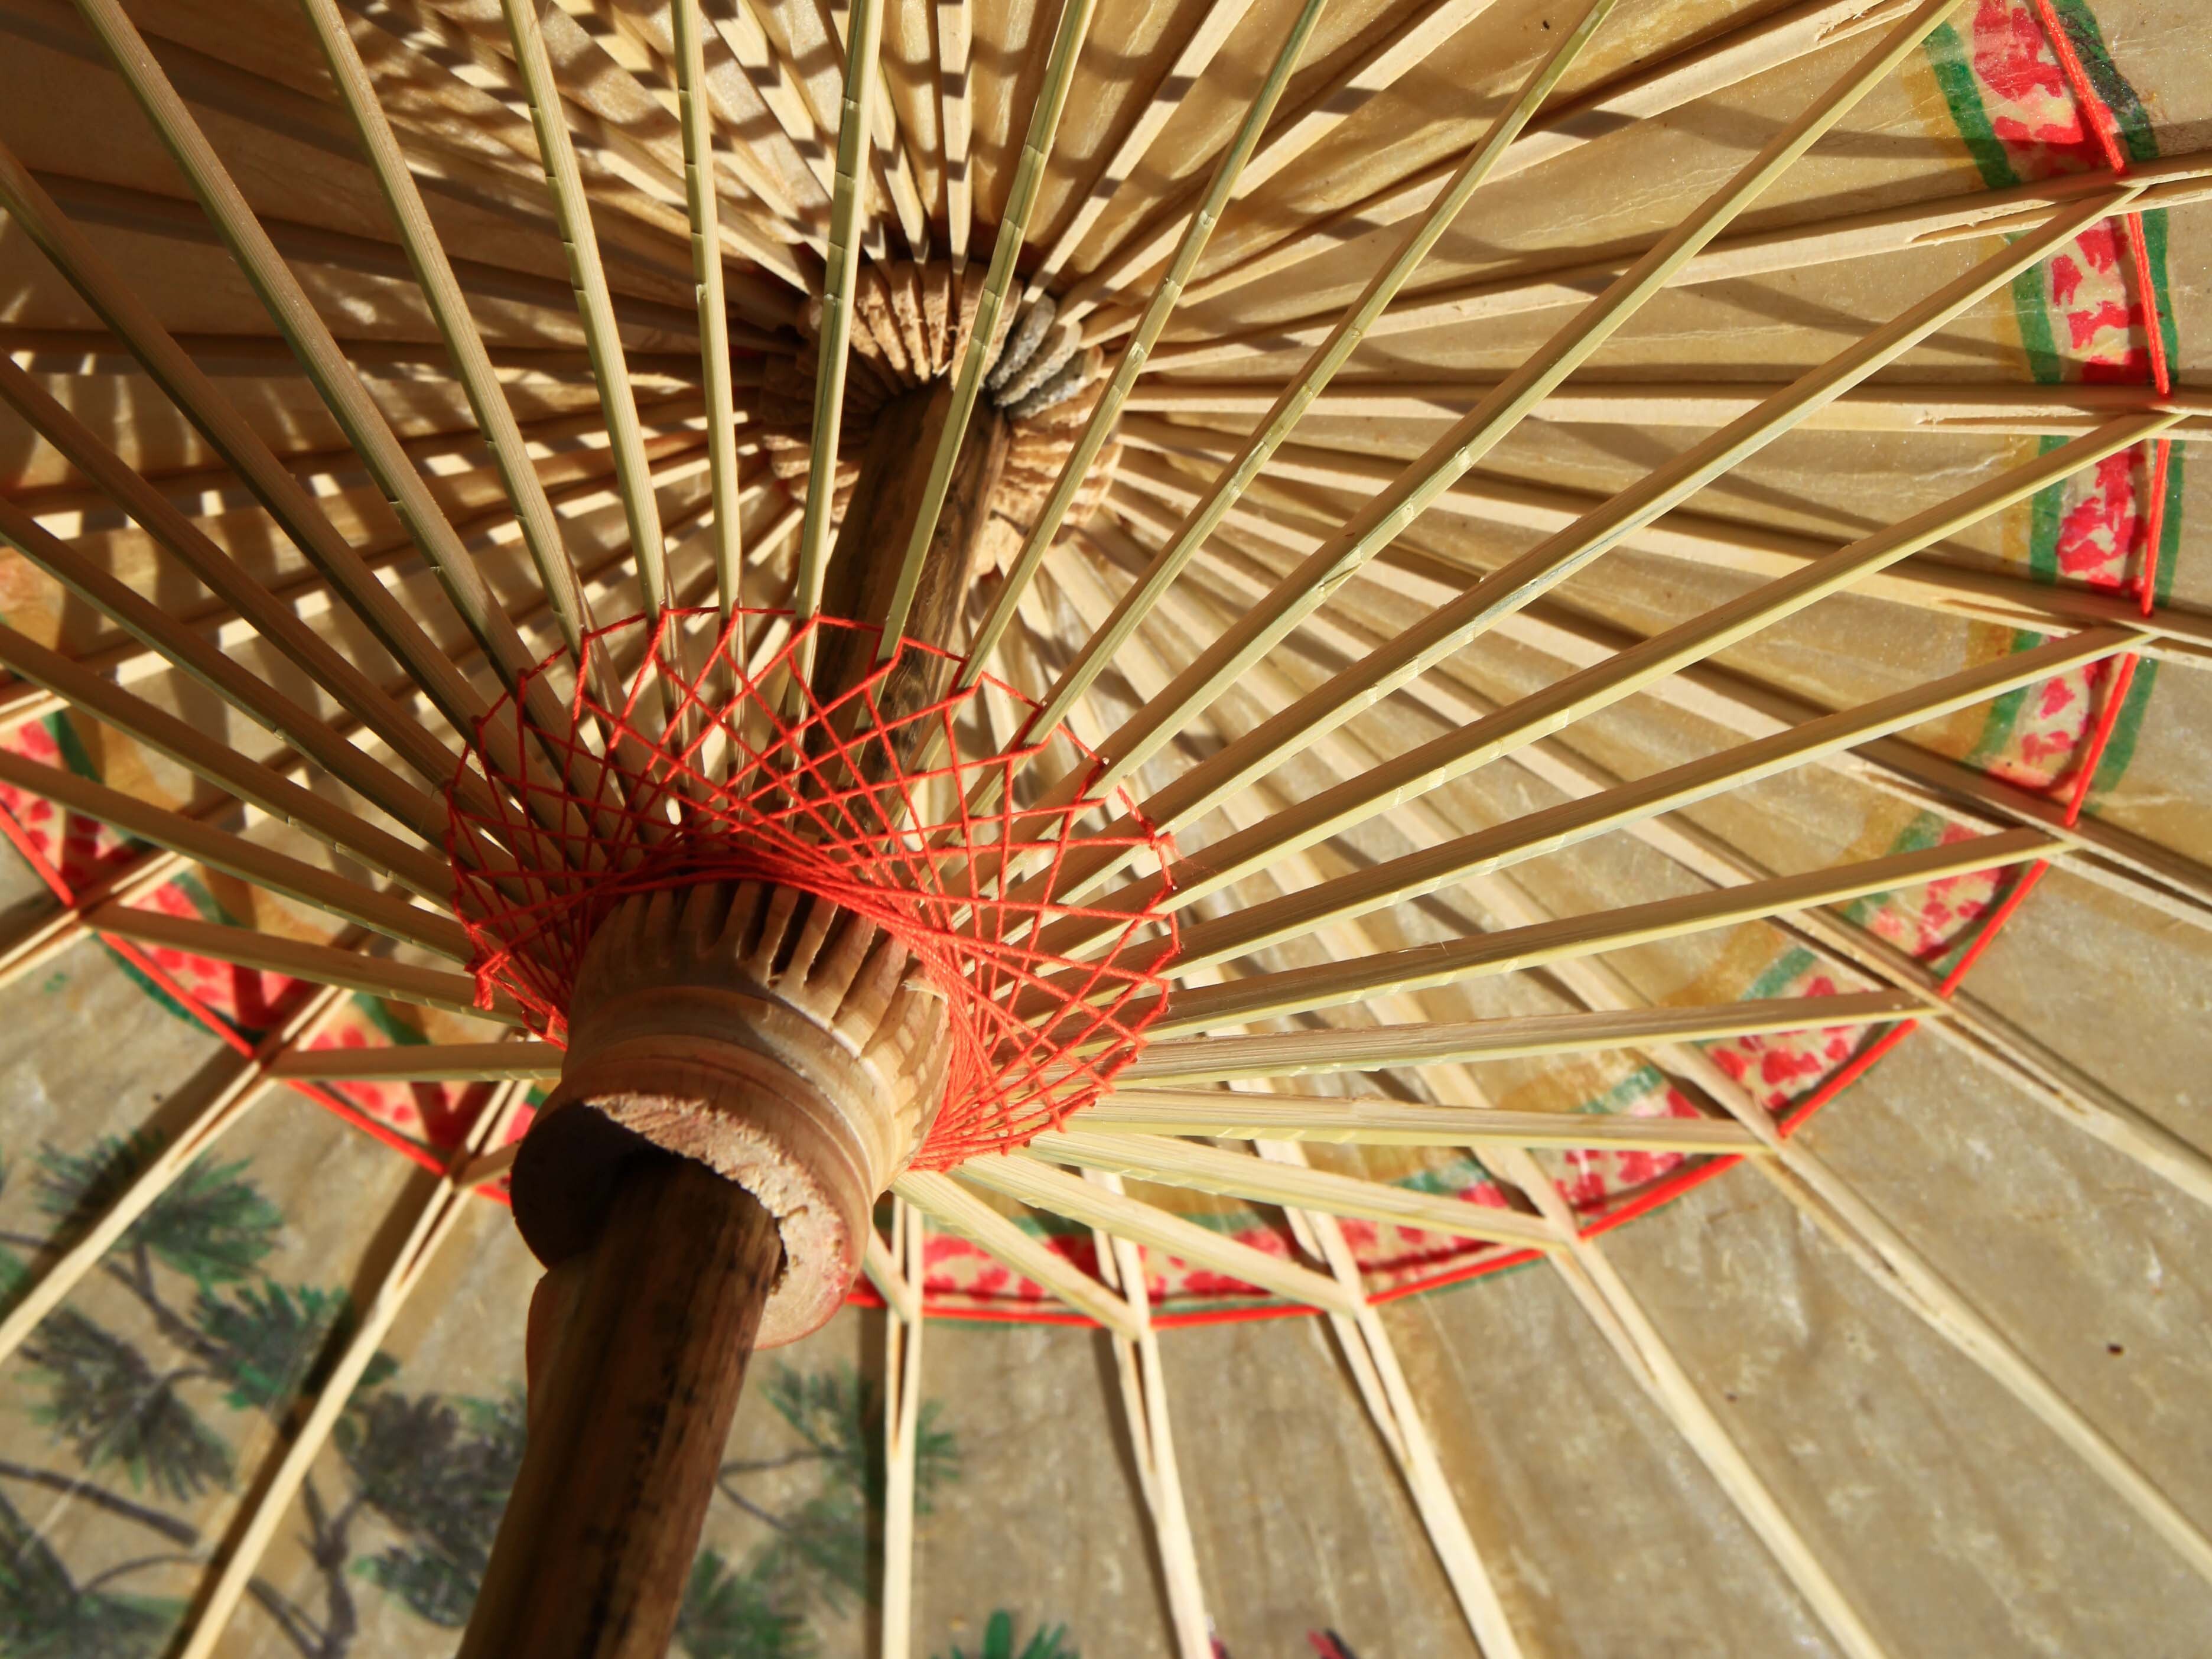 当蔬菜也时尚、油纸伞玩出“新花样” 泸州江阳乡村文化旅游兴味浓 - 川观新闻